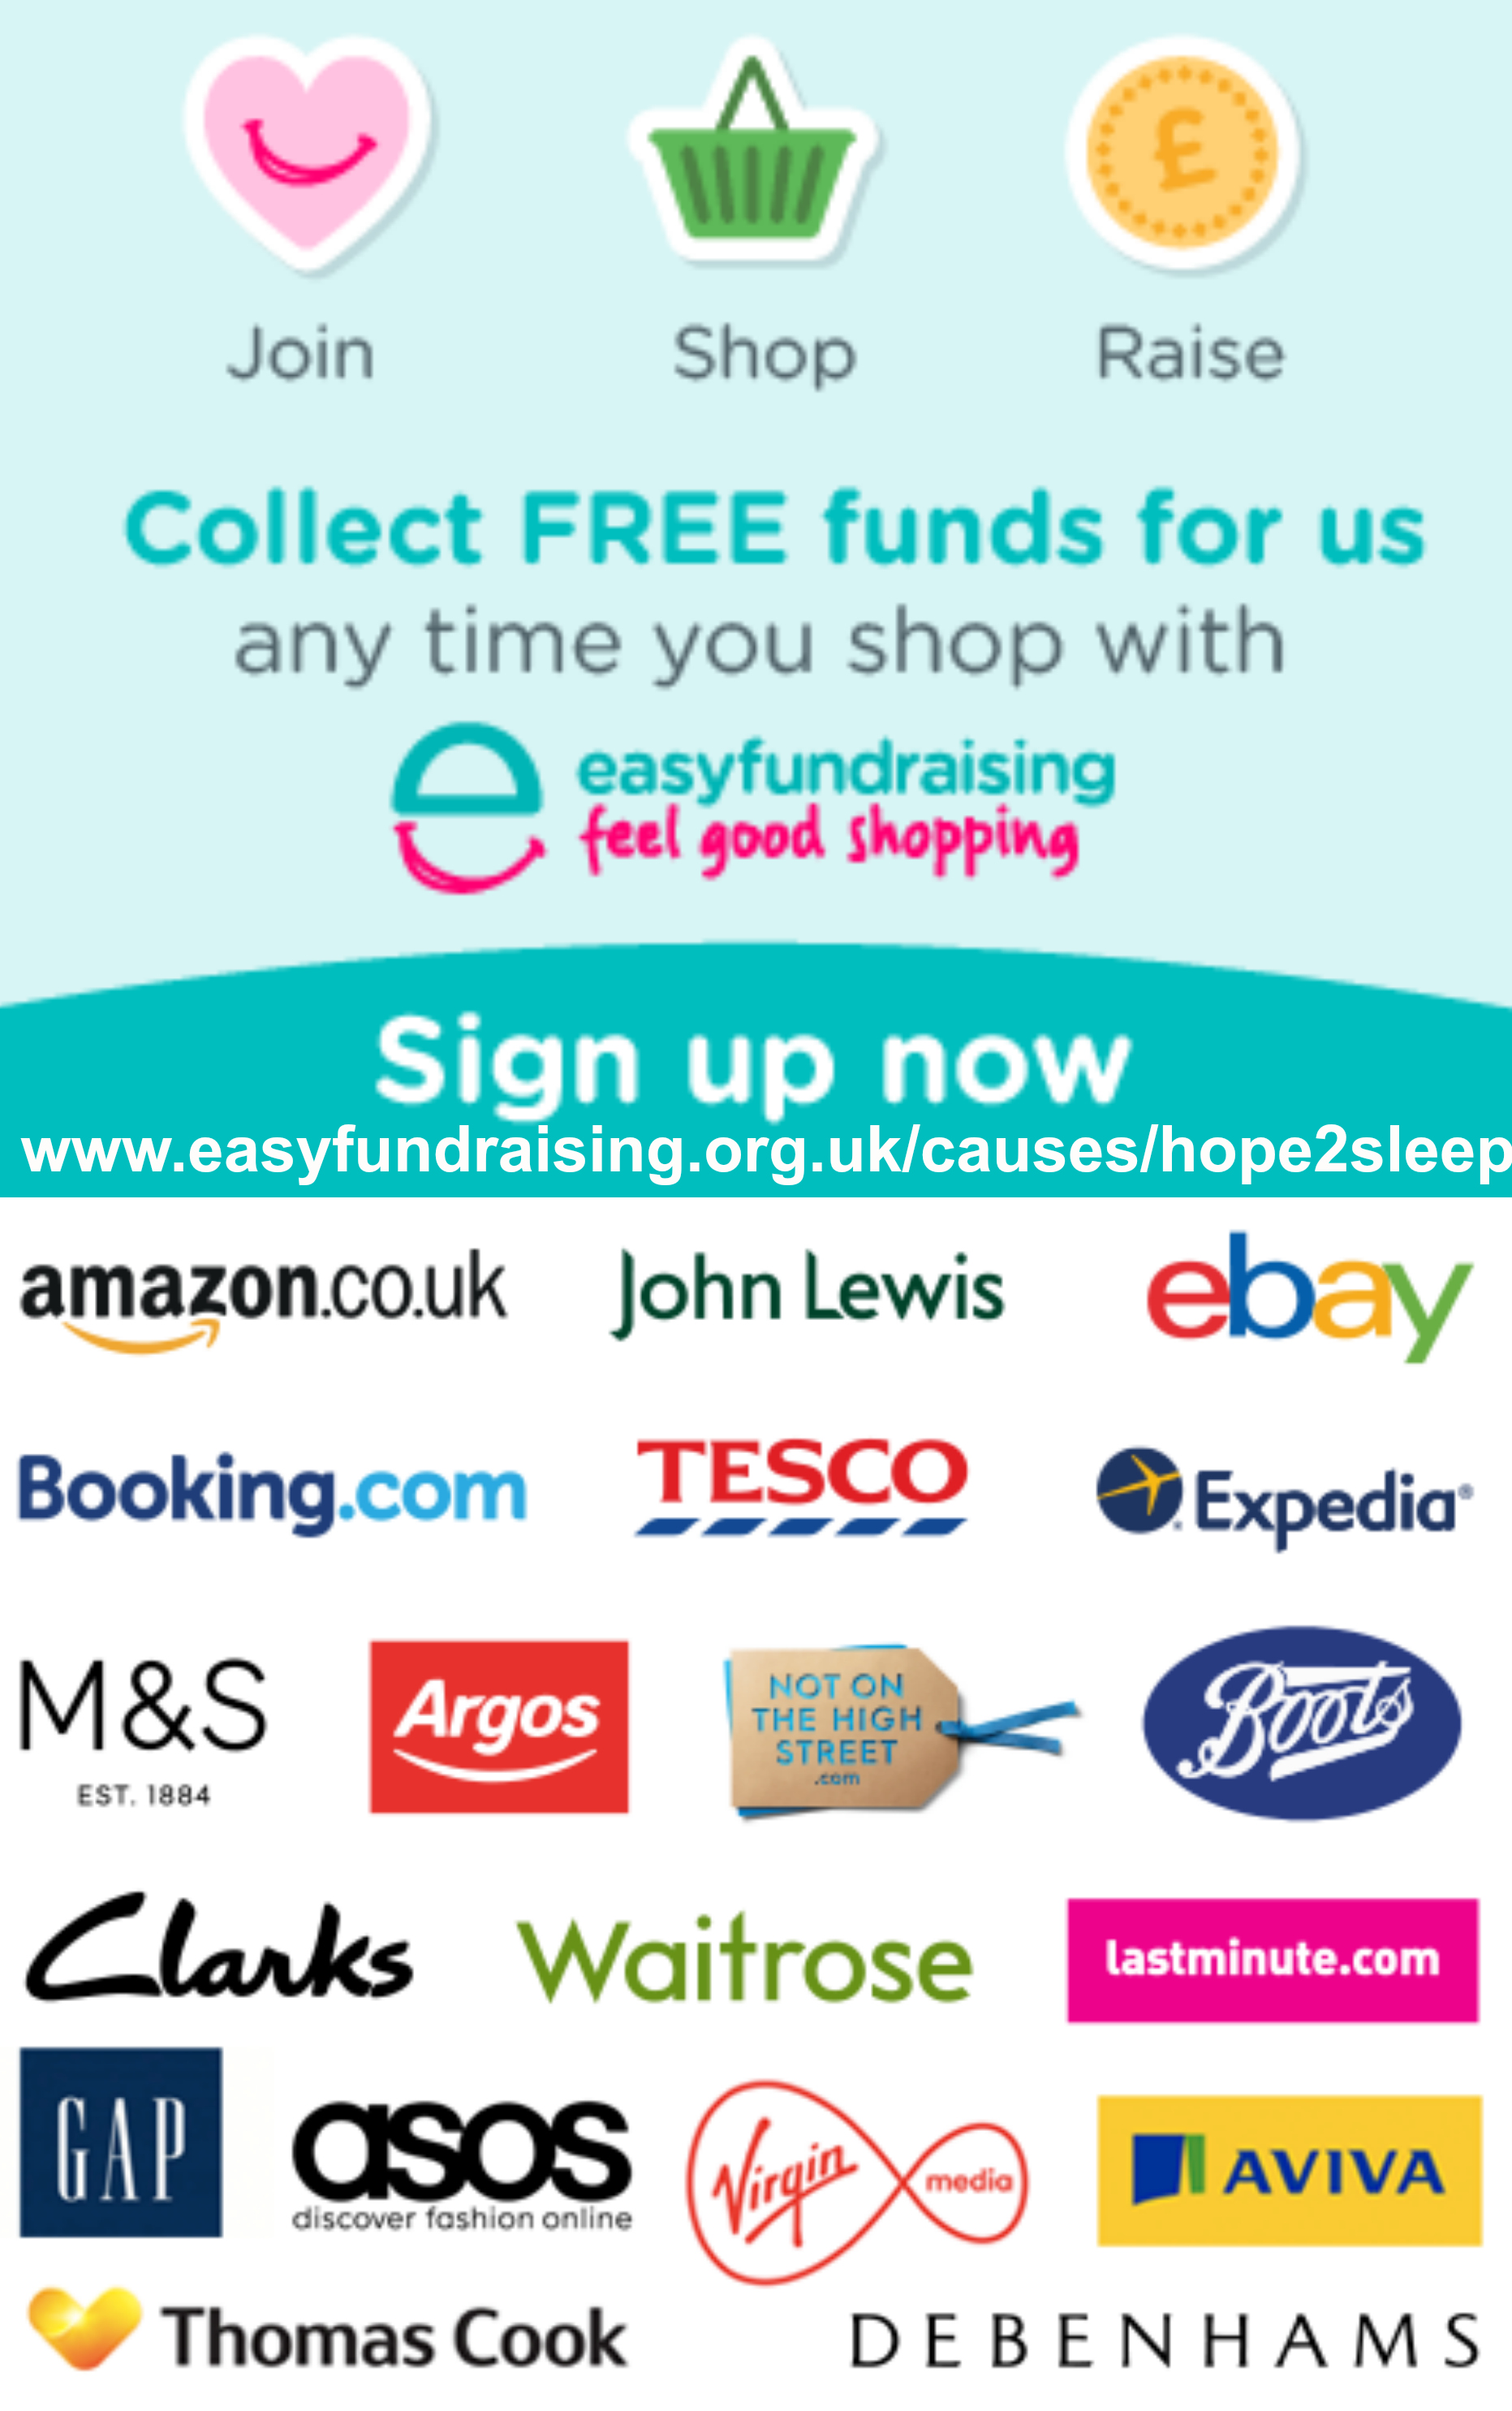 https://www.easyfundraising.org.uk/causes/hope2sleep/